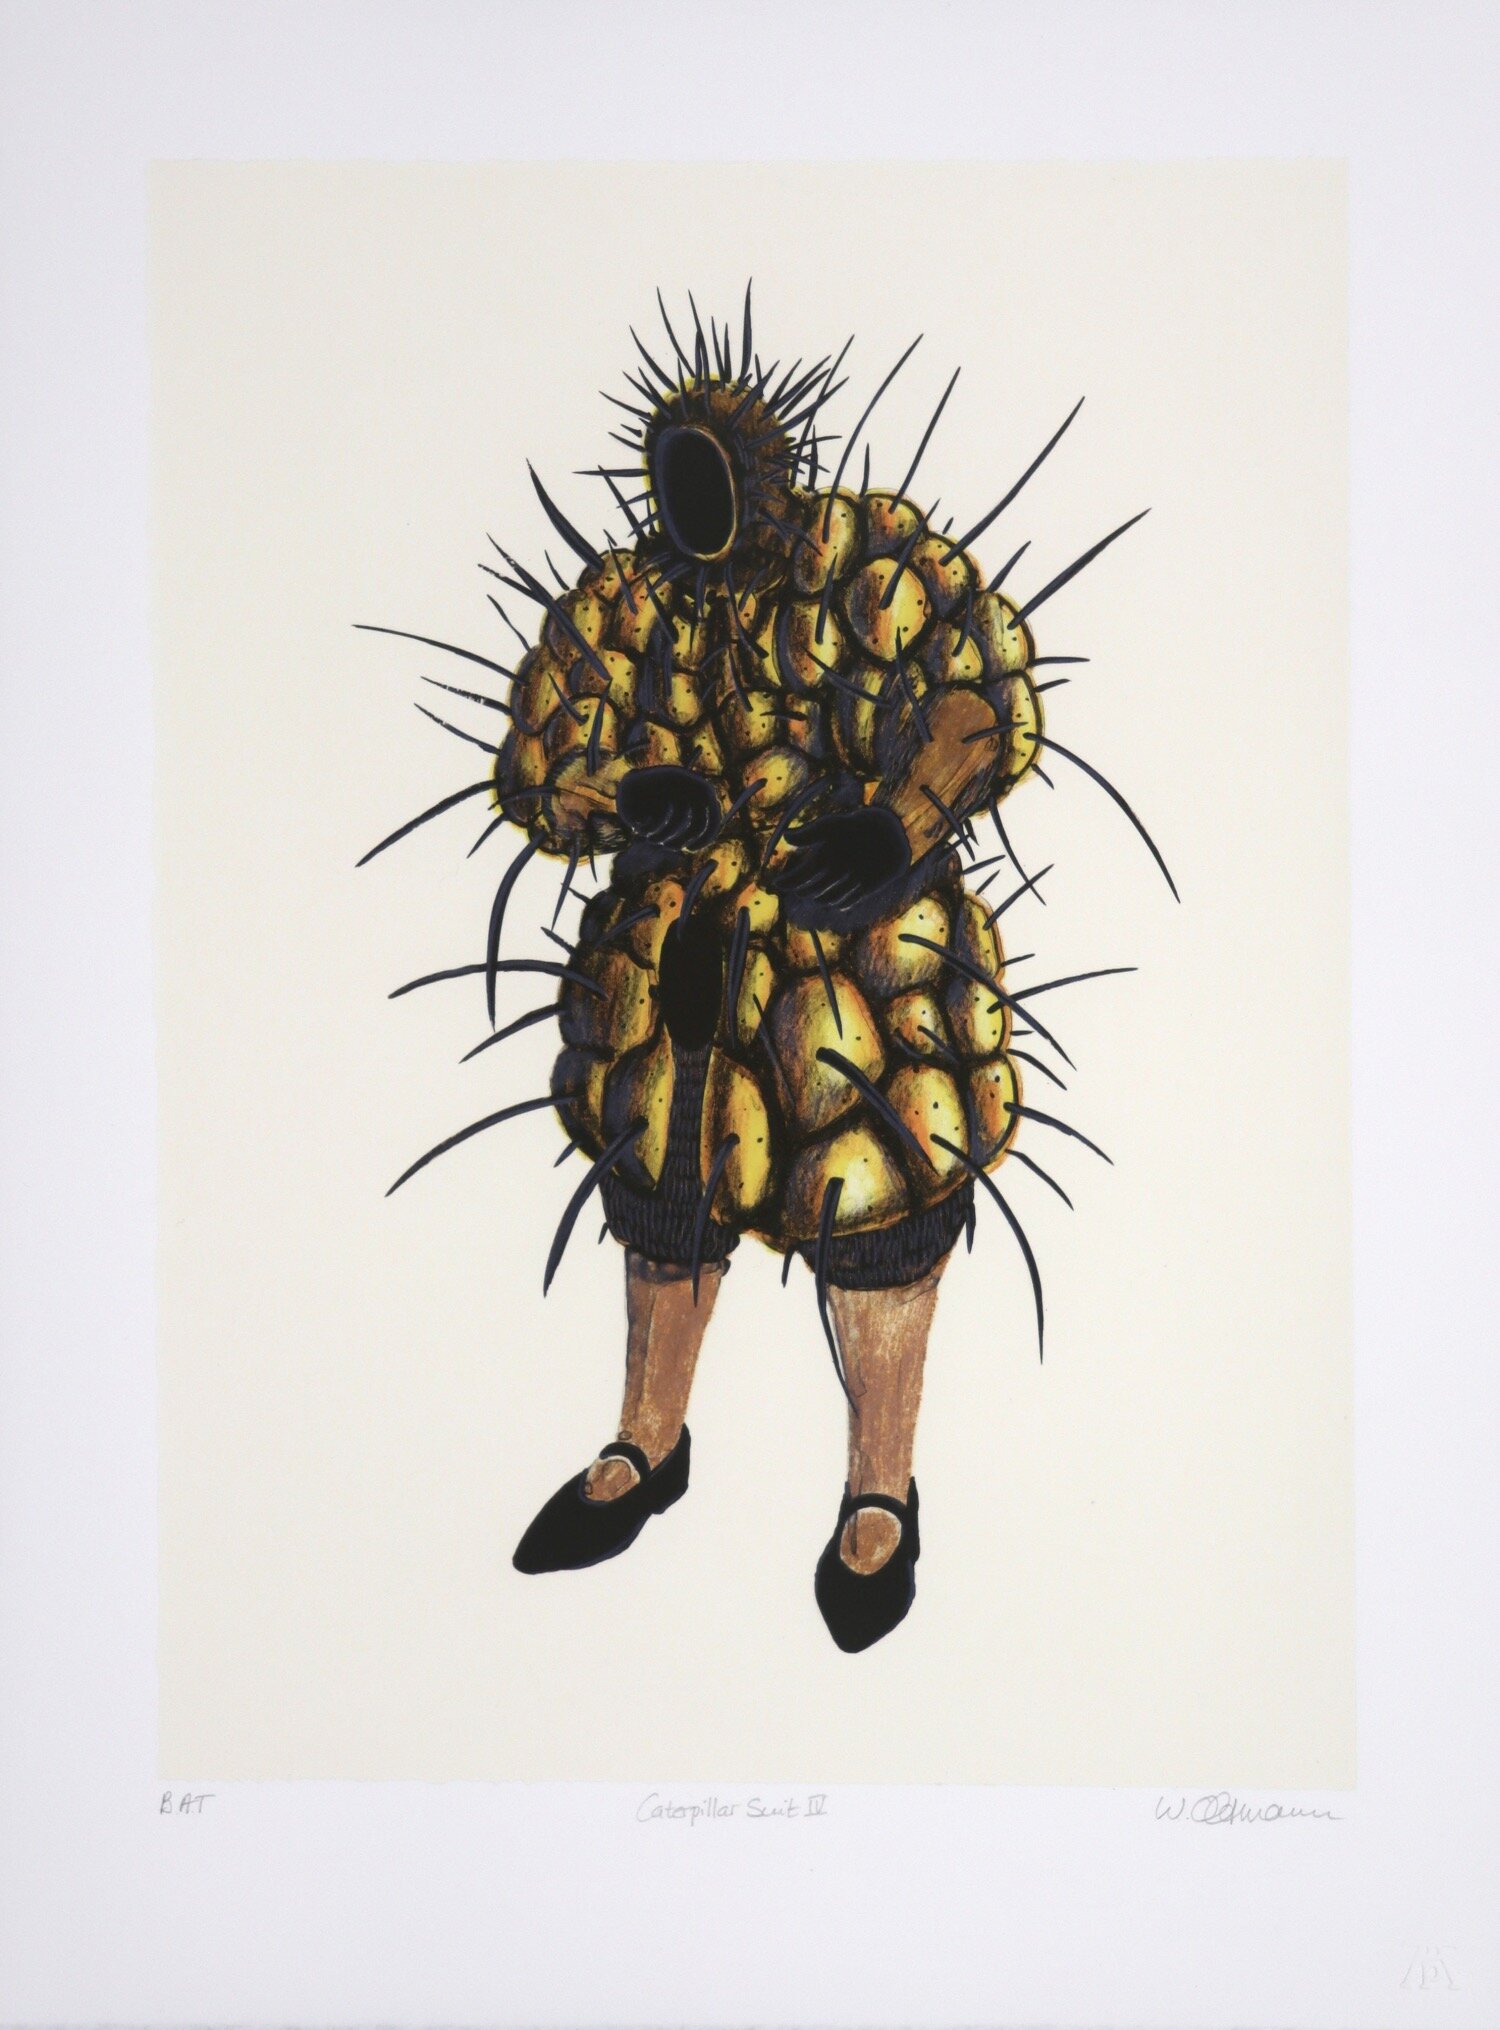 Walter Oltmann -Caterpillar Suit IV, 450x333mm.jpg